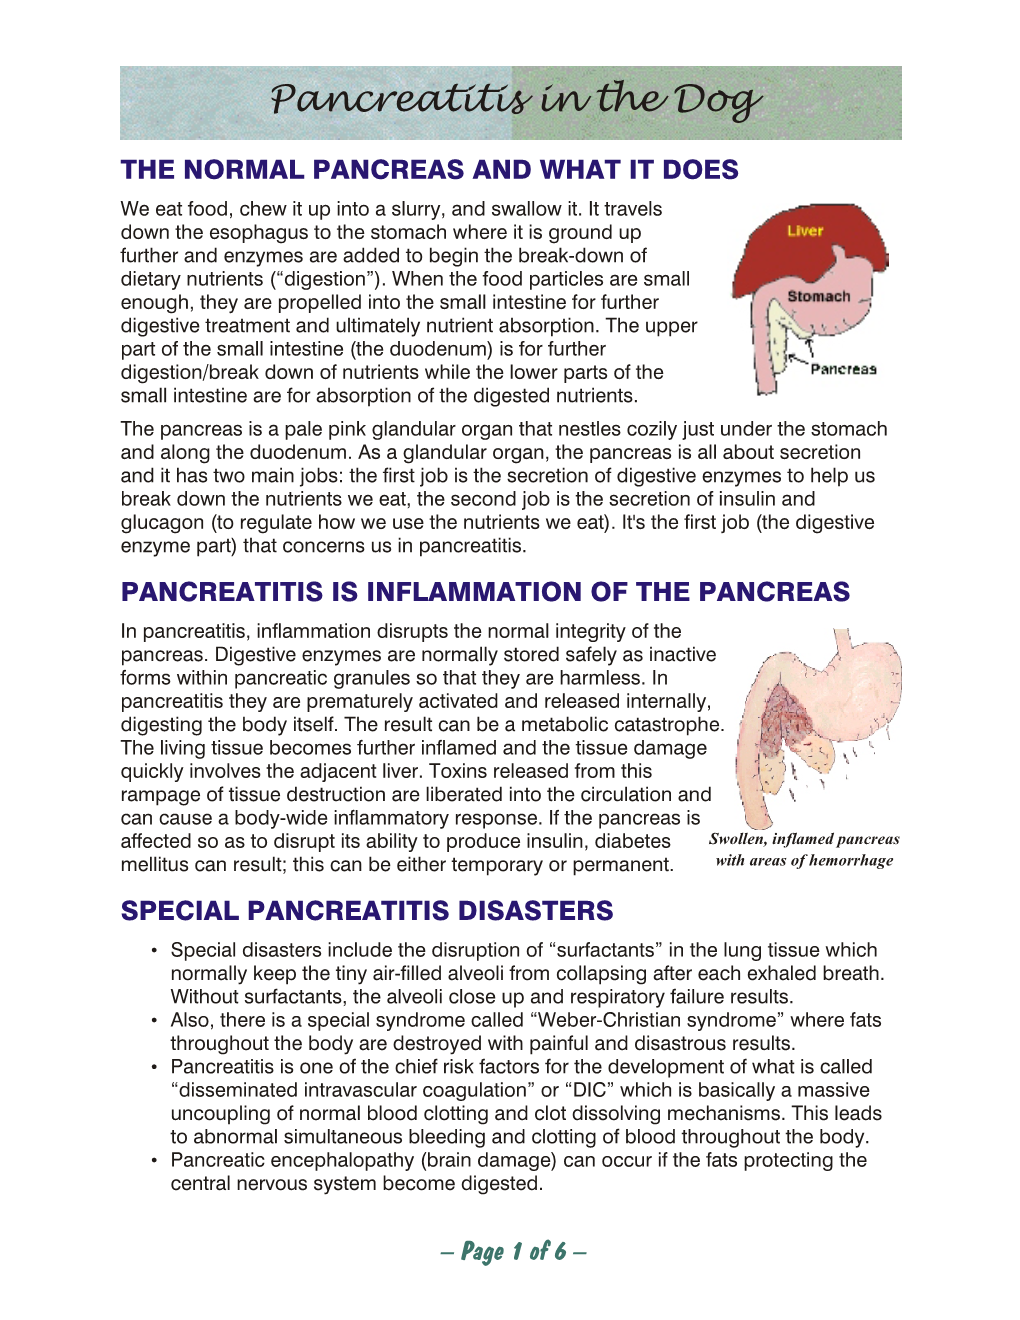 Pancreatitis in the Dog.Vp